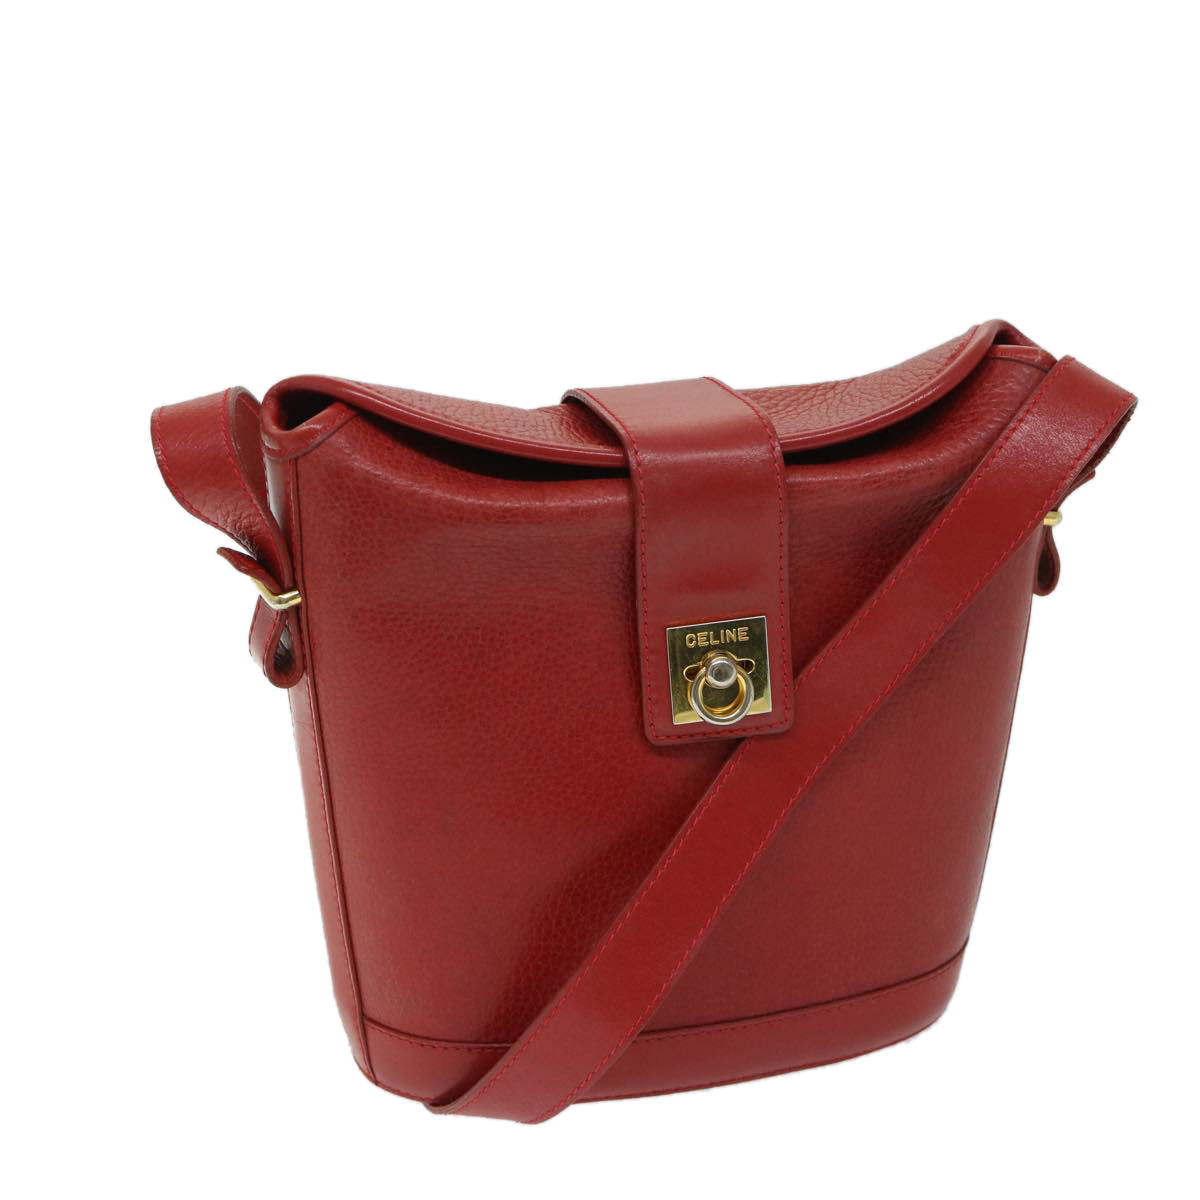 CELINE Shoulder Bag Leather Red Auth 68032